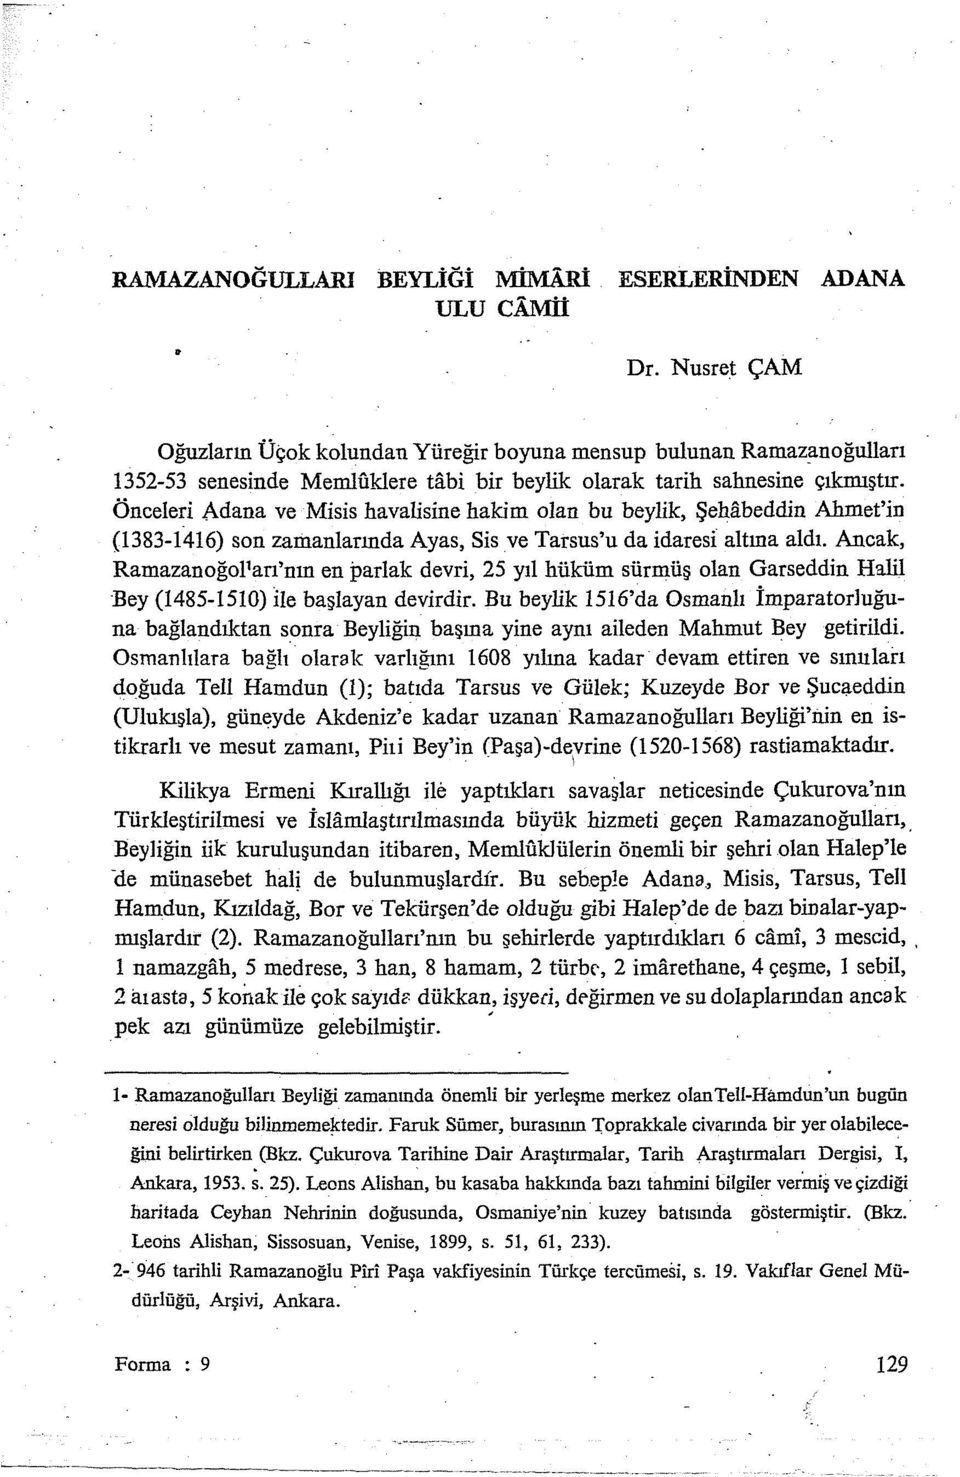 Önceleri Adana ve Misis ha valisine hakim olan bu beylik, Şehitbeddin Ahmet'in (1383-1416) son zamanlarında Ayas, Sis ve Tarsus'u da idaresi altına aldı.